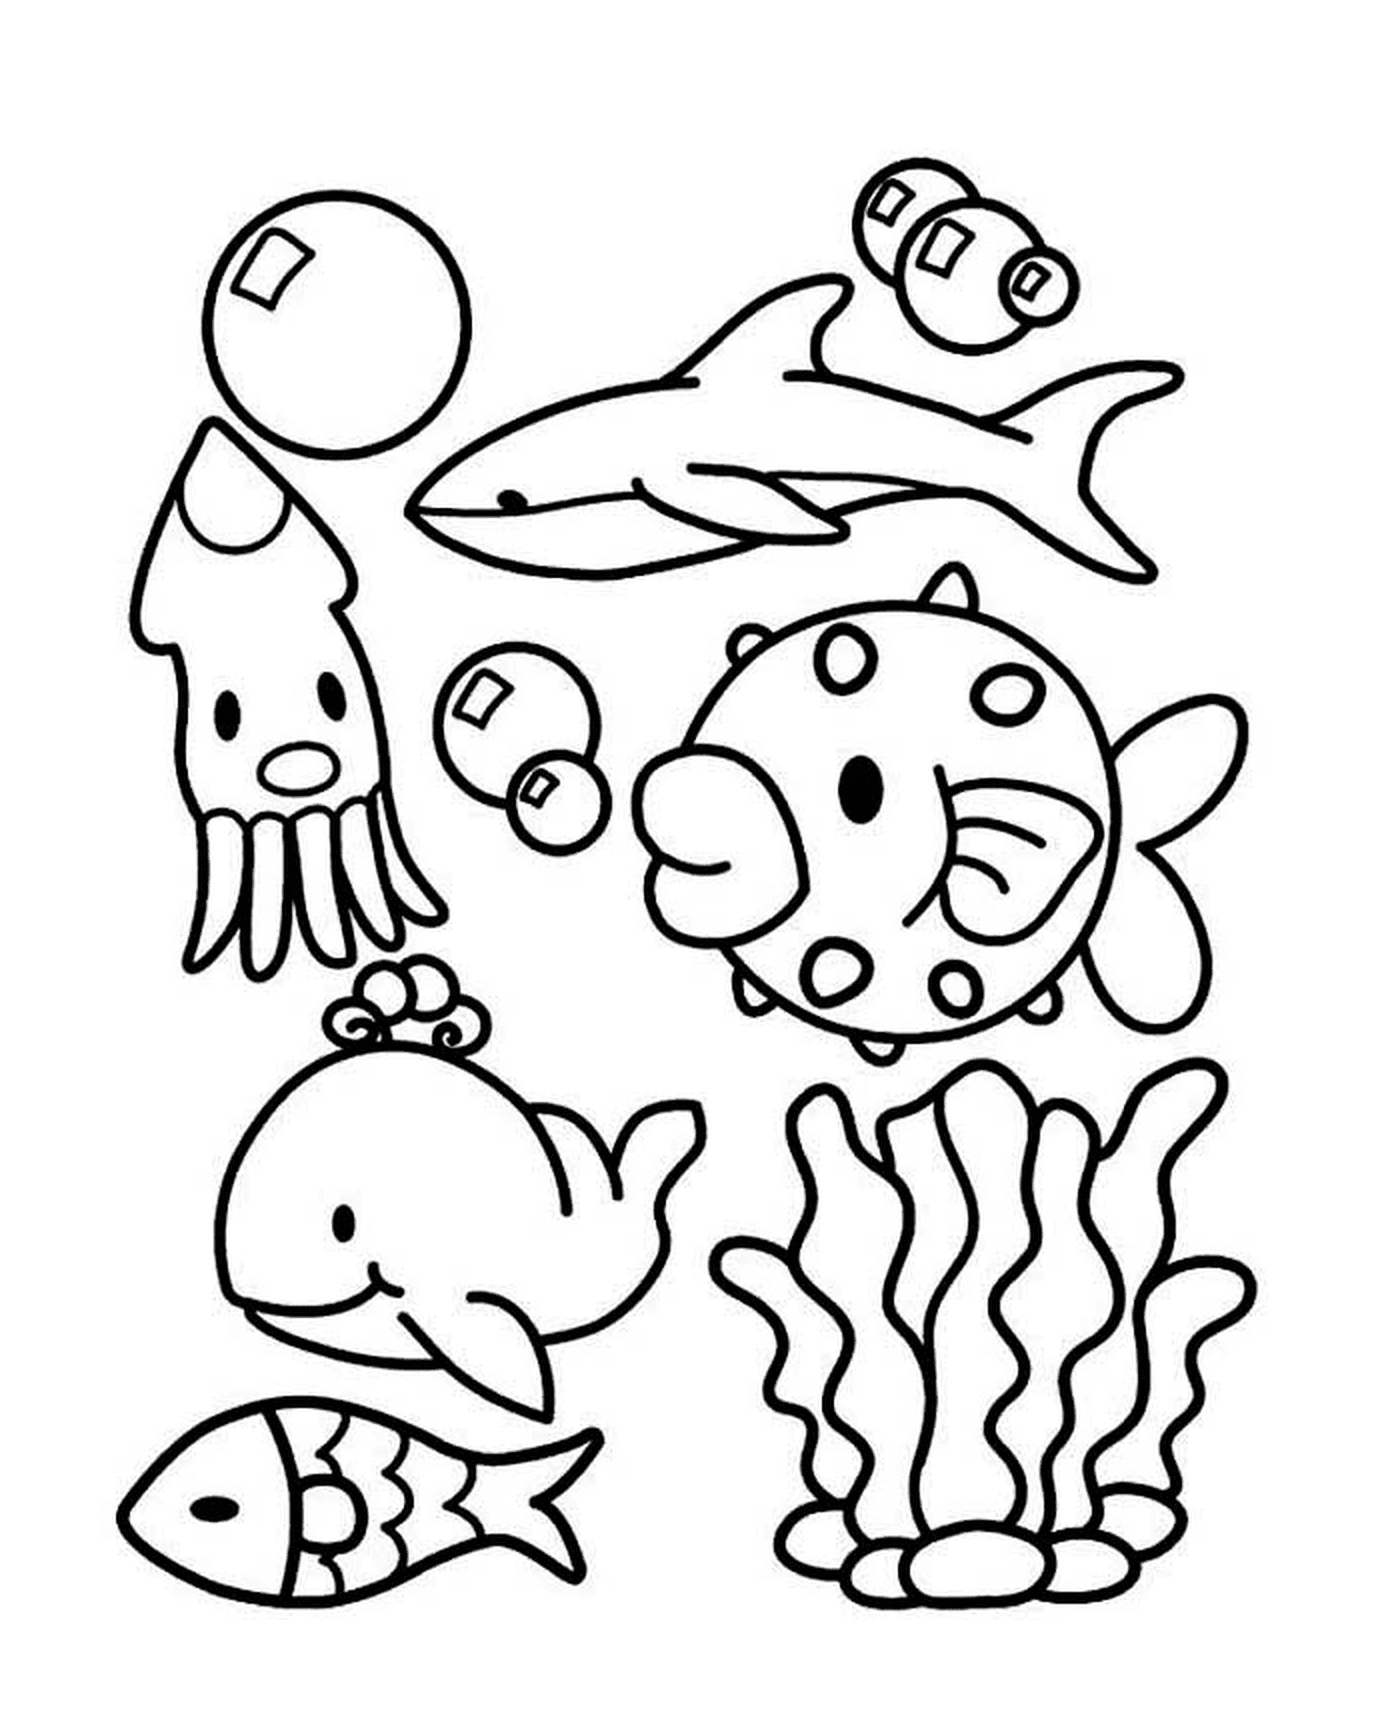  Un gruppo di animali marini nell'acqua 